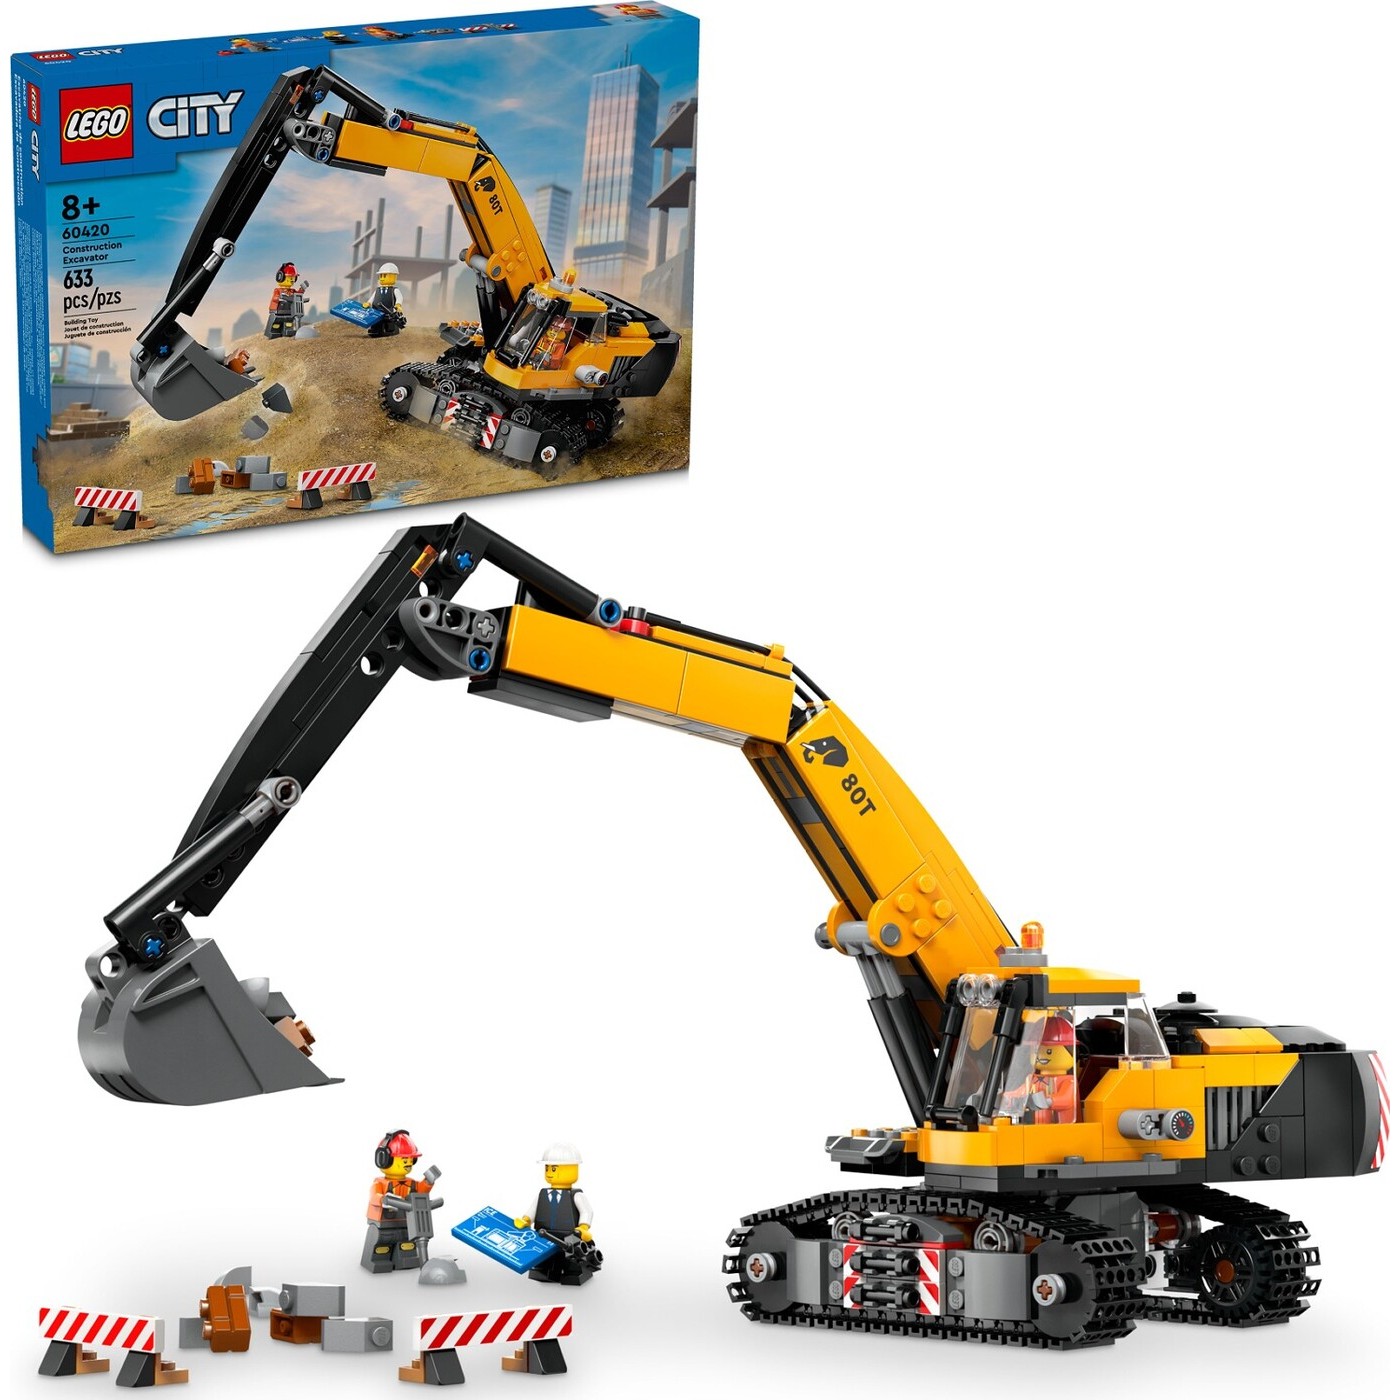 Lego City Yellow Construction Excavator (60420)